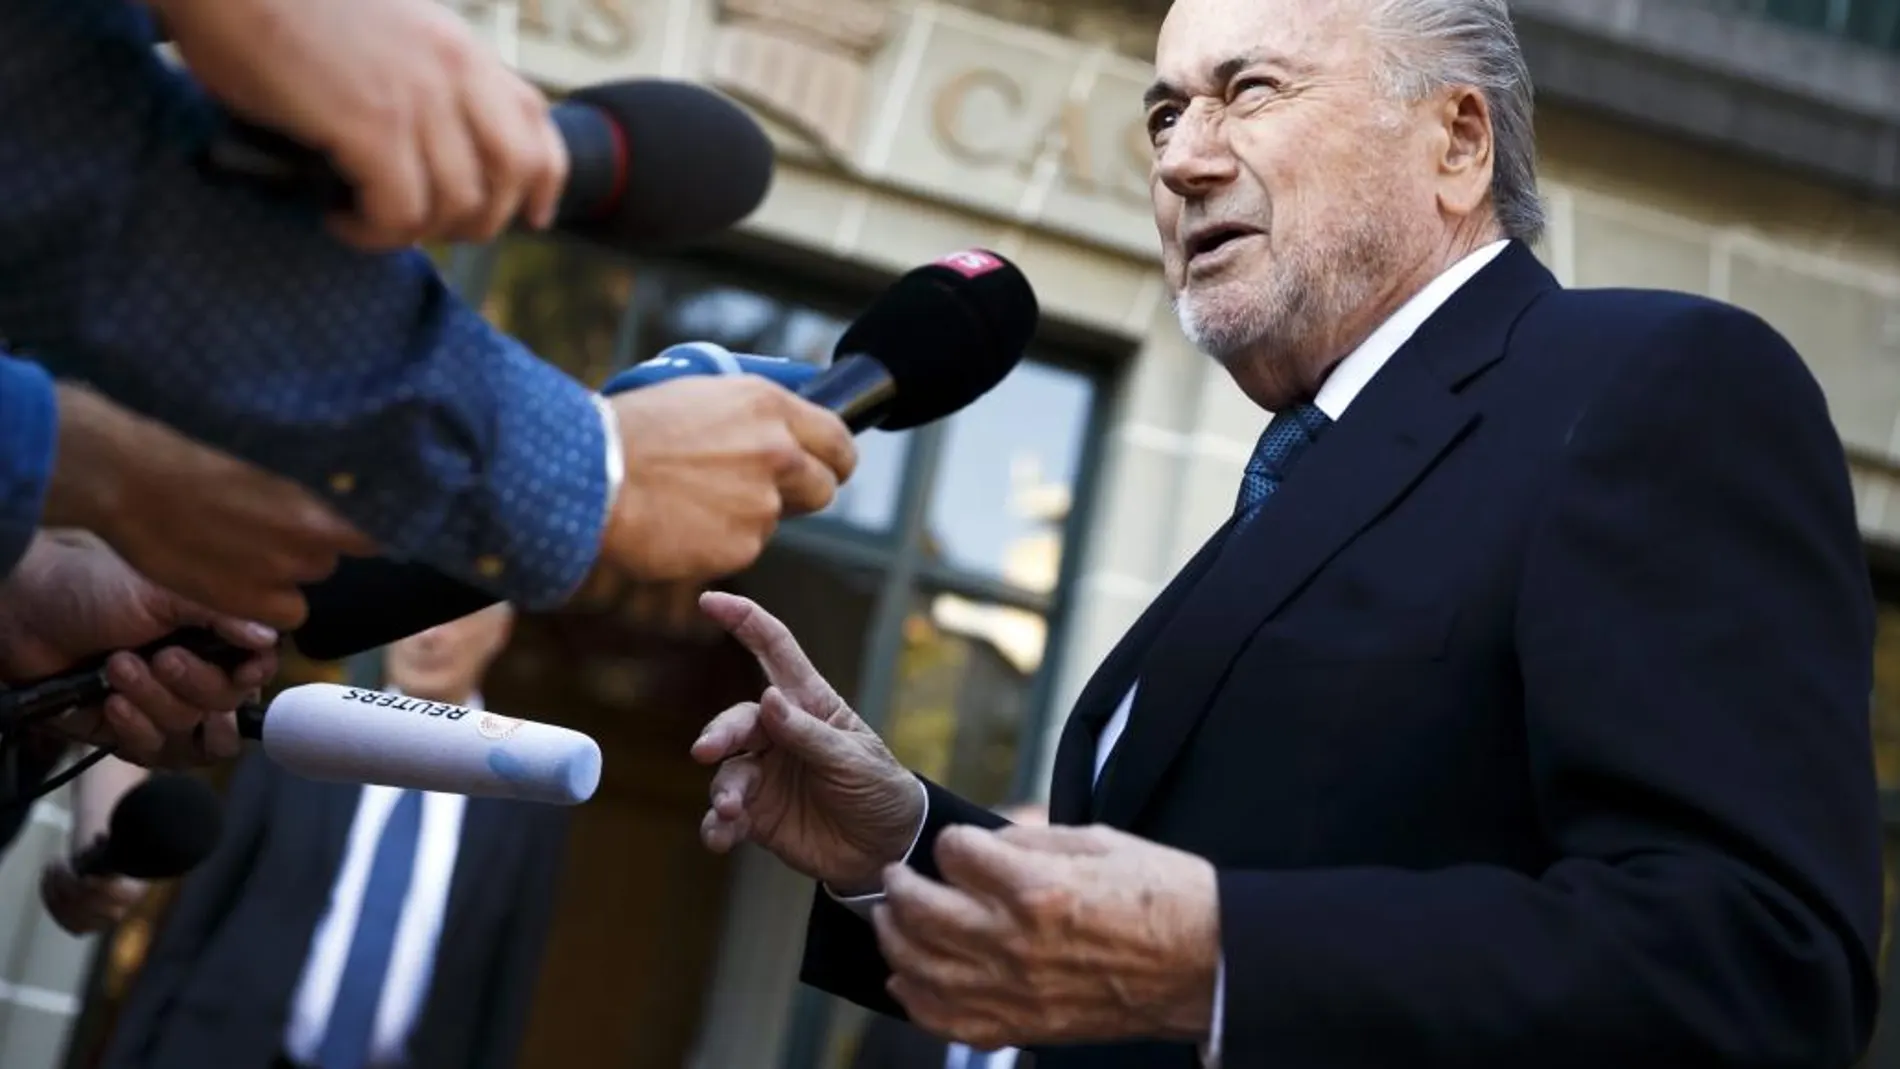 El ex presidente de la FIFA Joseph Blatter